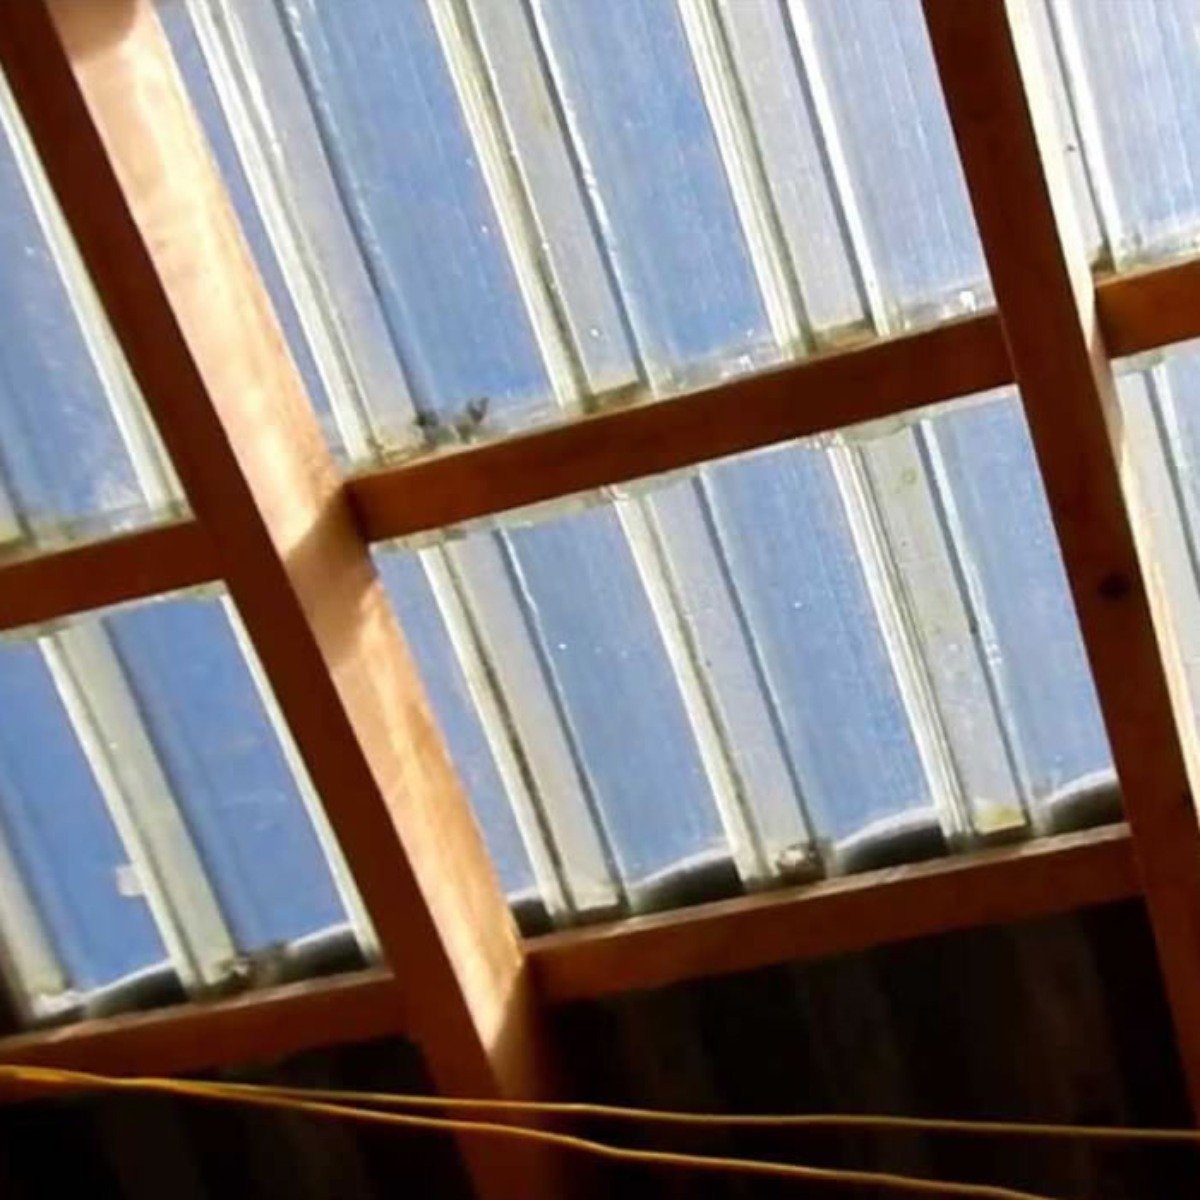 Telha Francesa Policarbonato Transparente 8 Peças Plastelha telha transparente policarbonato, telha  - 8